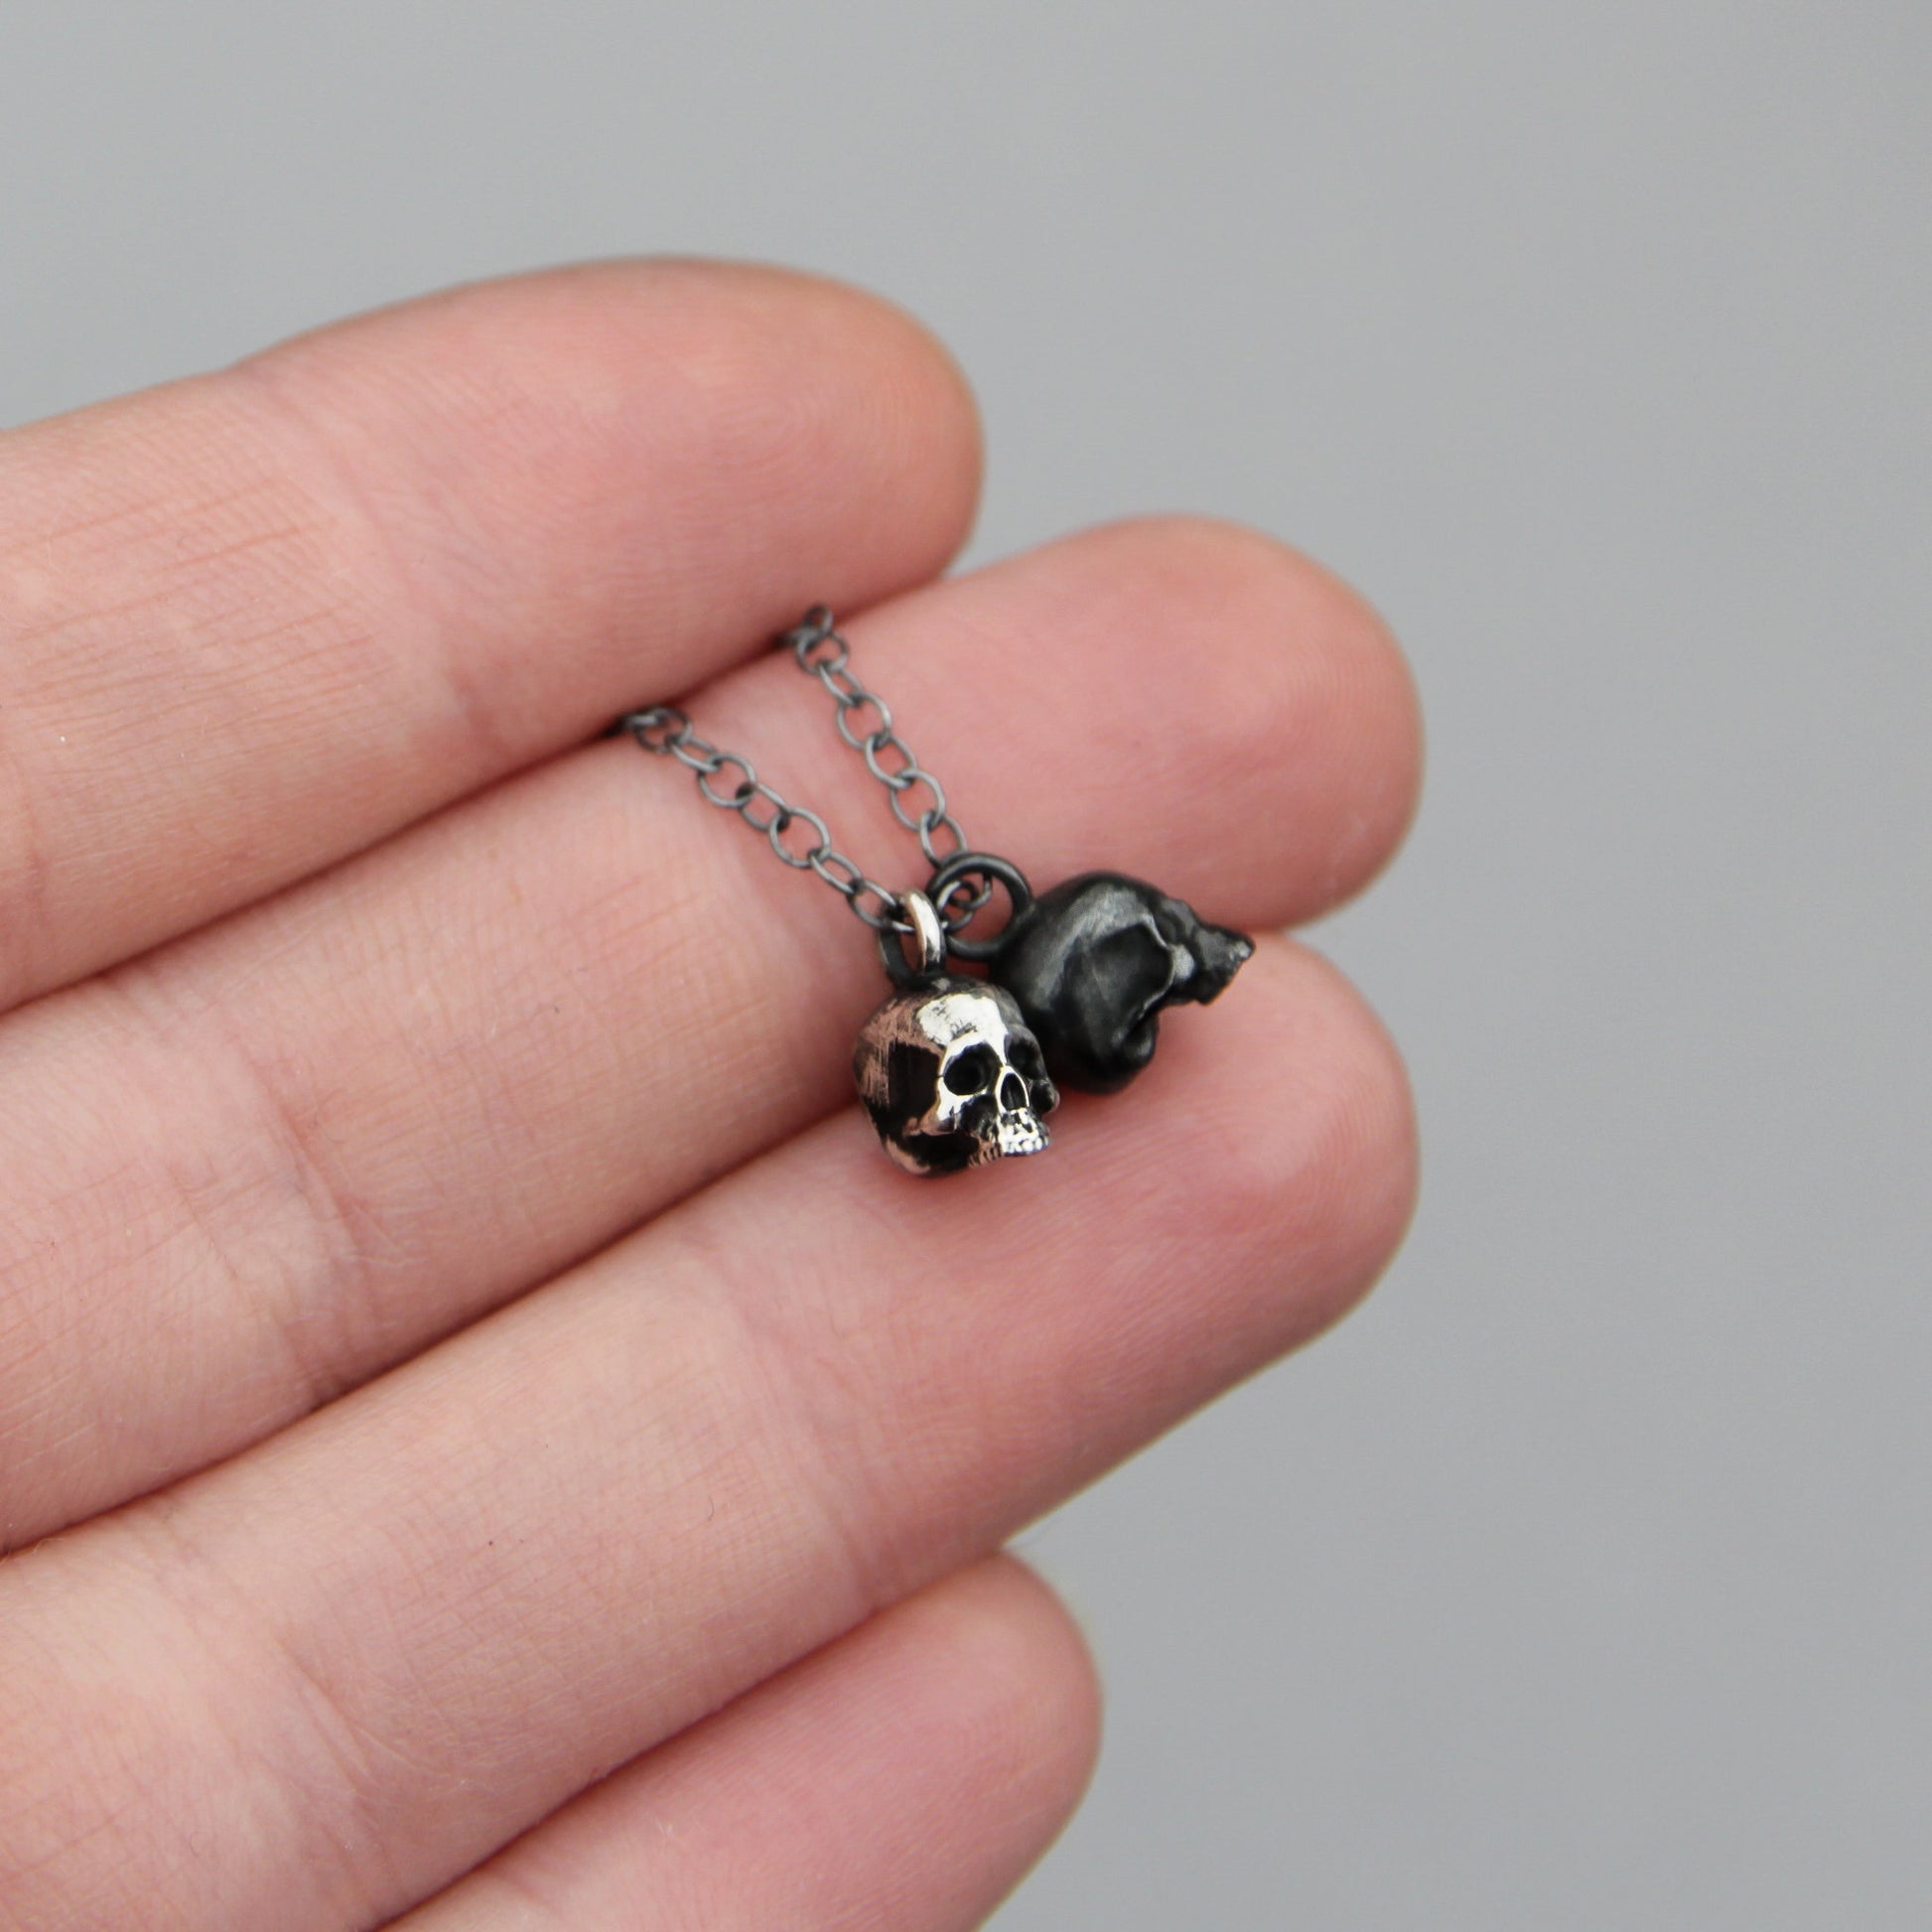 Small skull pendant.